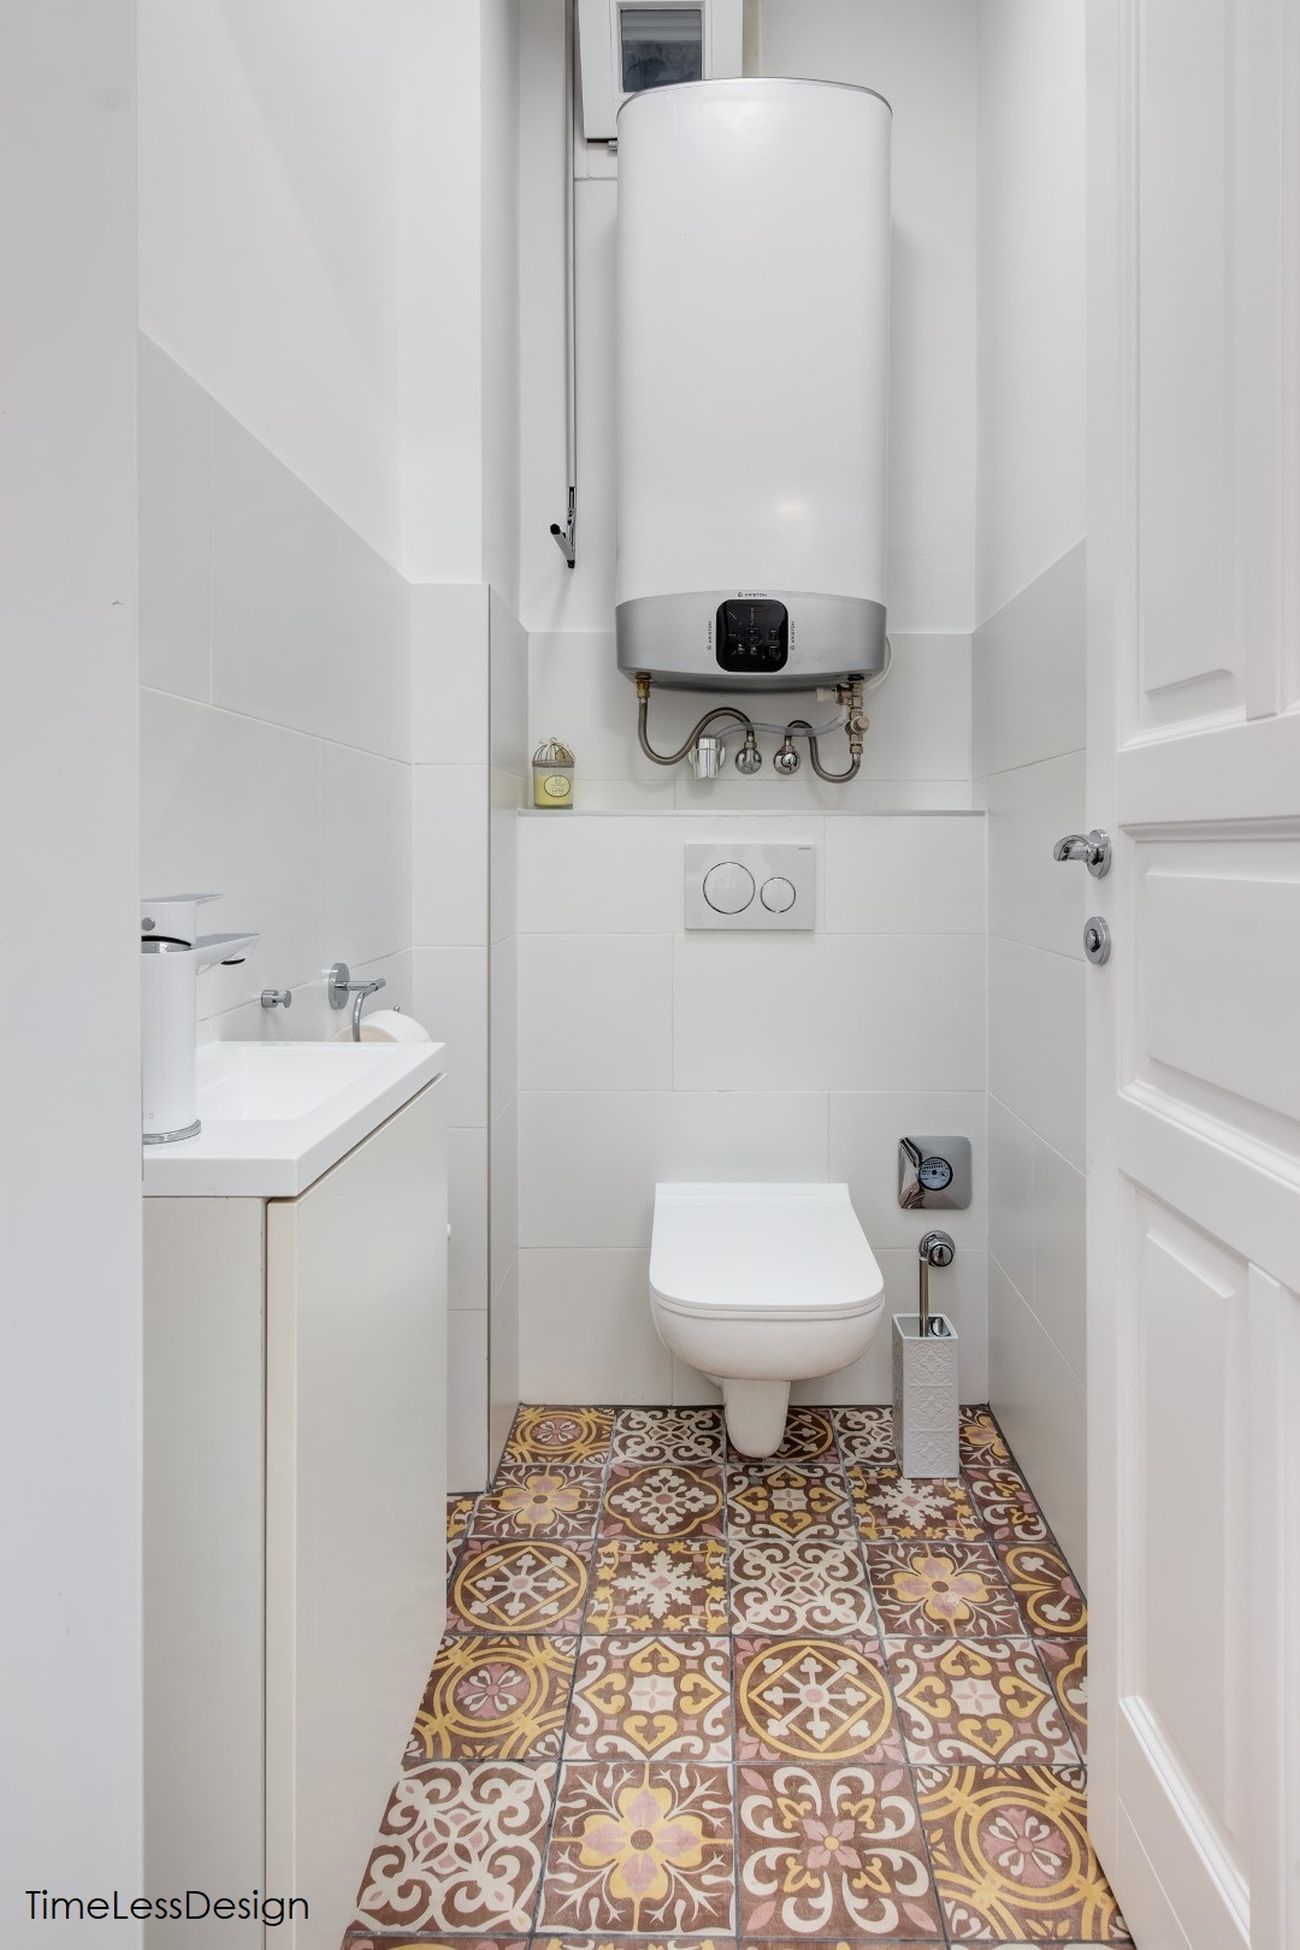 Különálló wc és a bojler egy helyen